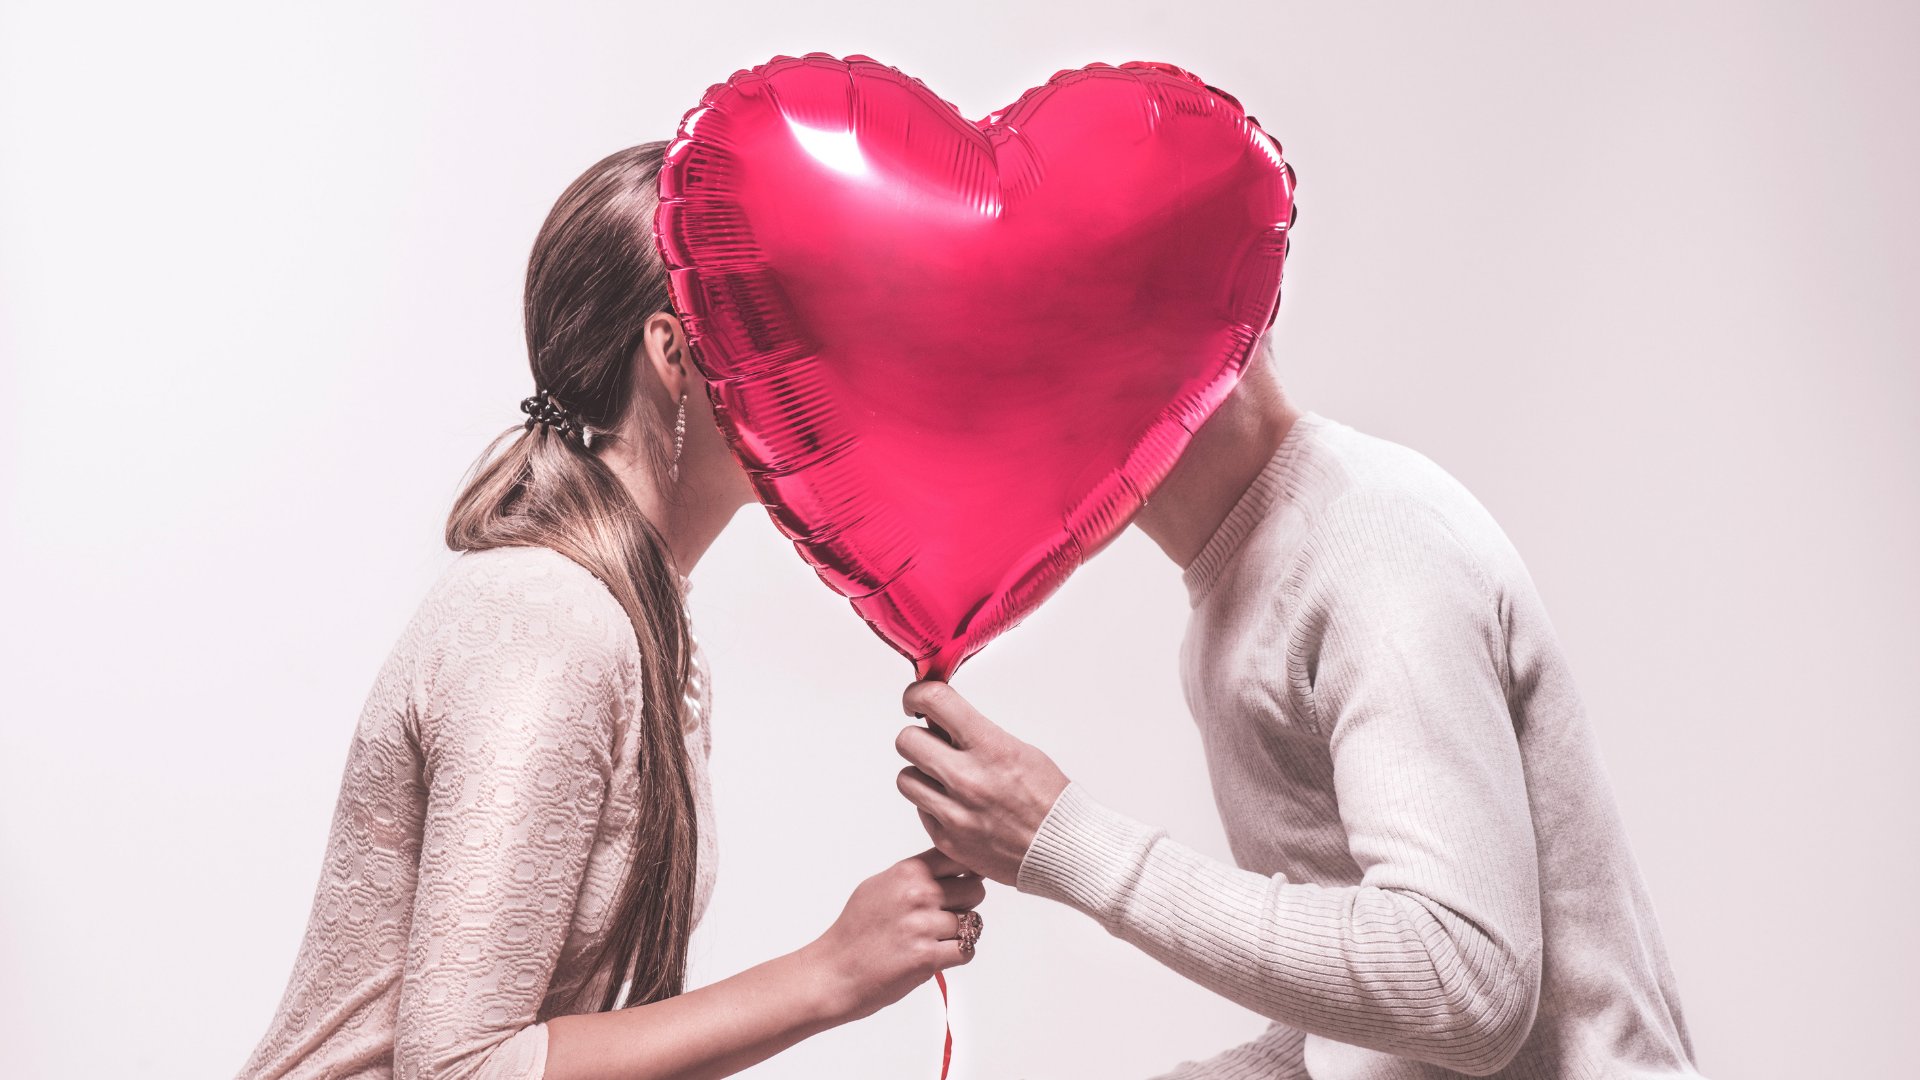 Uma mulher e um homem se escondendo atrás de um balão em formato de coração.